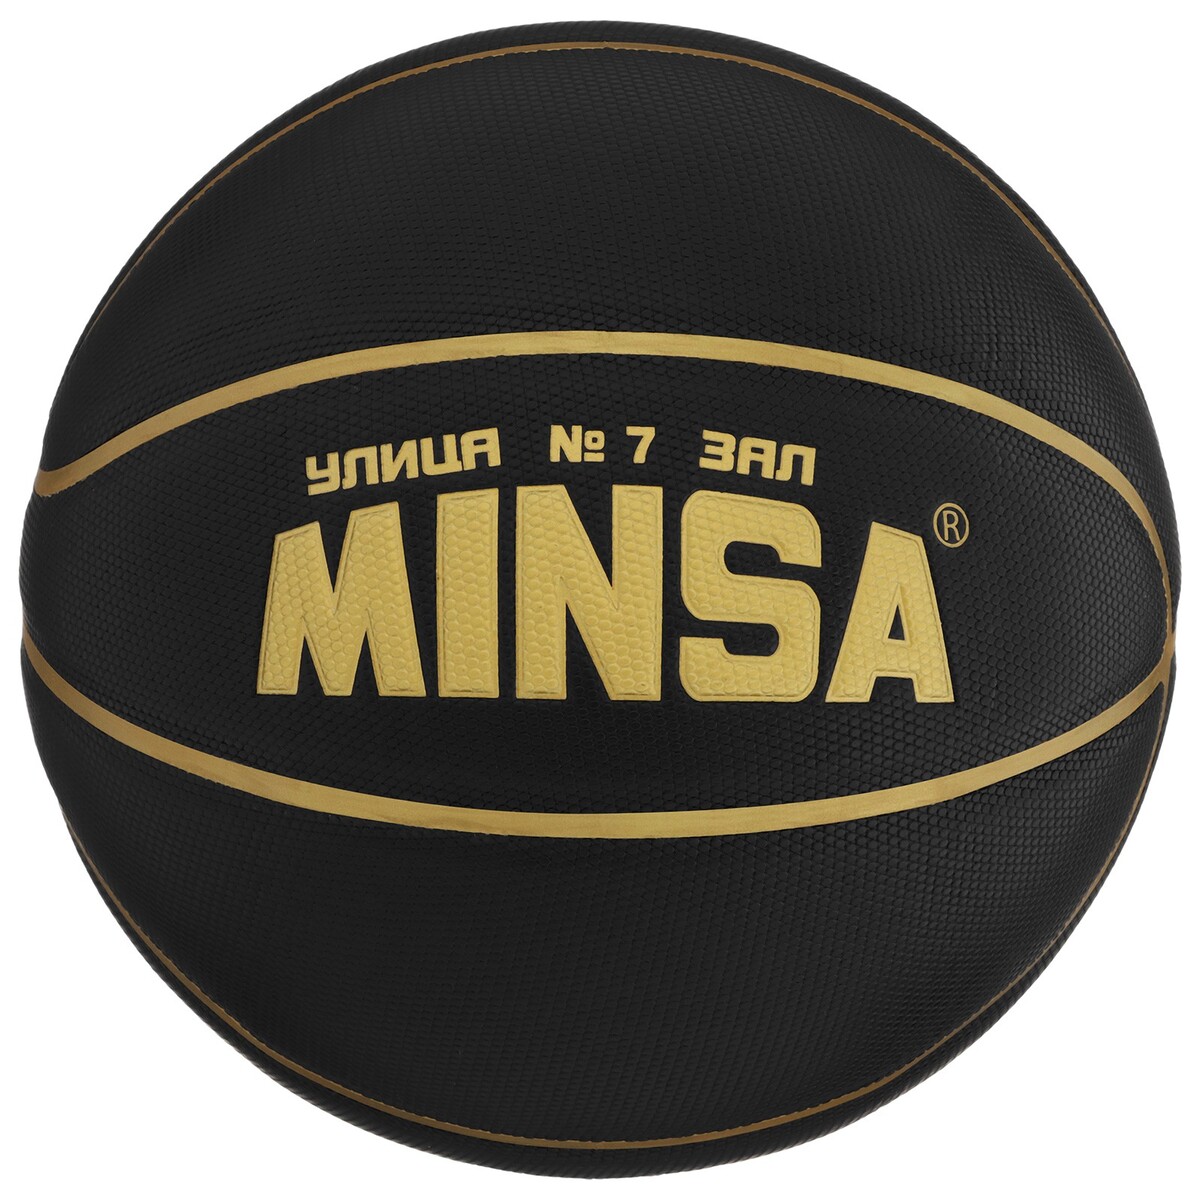 Баскетбольный мяч minsa, pu, размер 7, 600 г centr opt щит баскетбольный с мячом и насосом bs01538